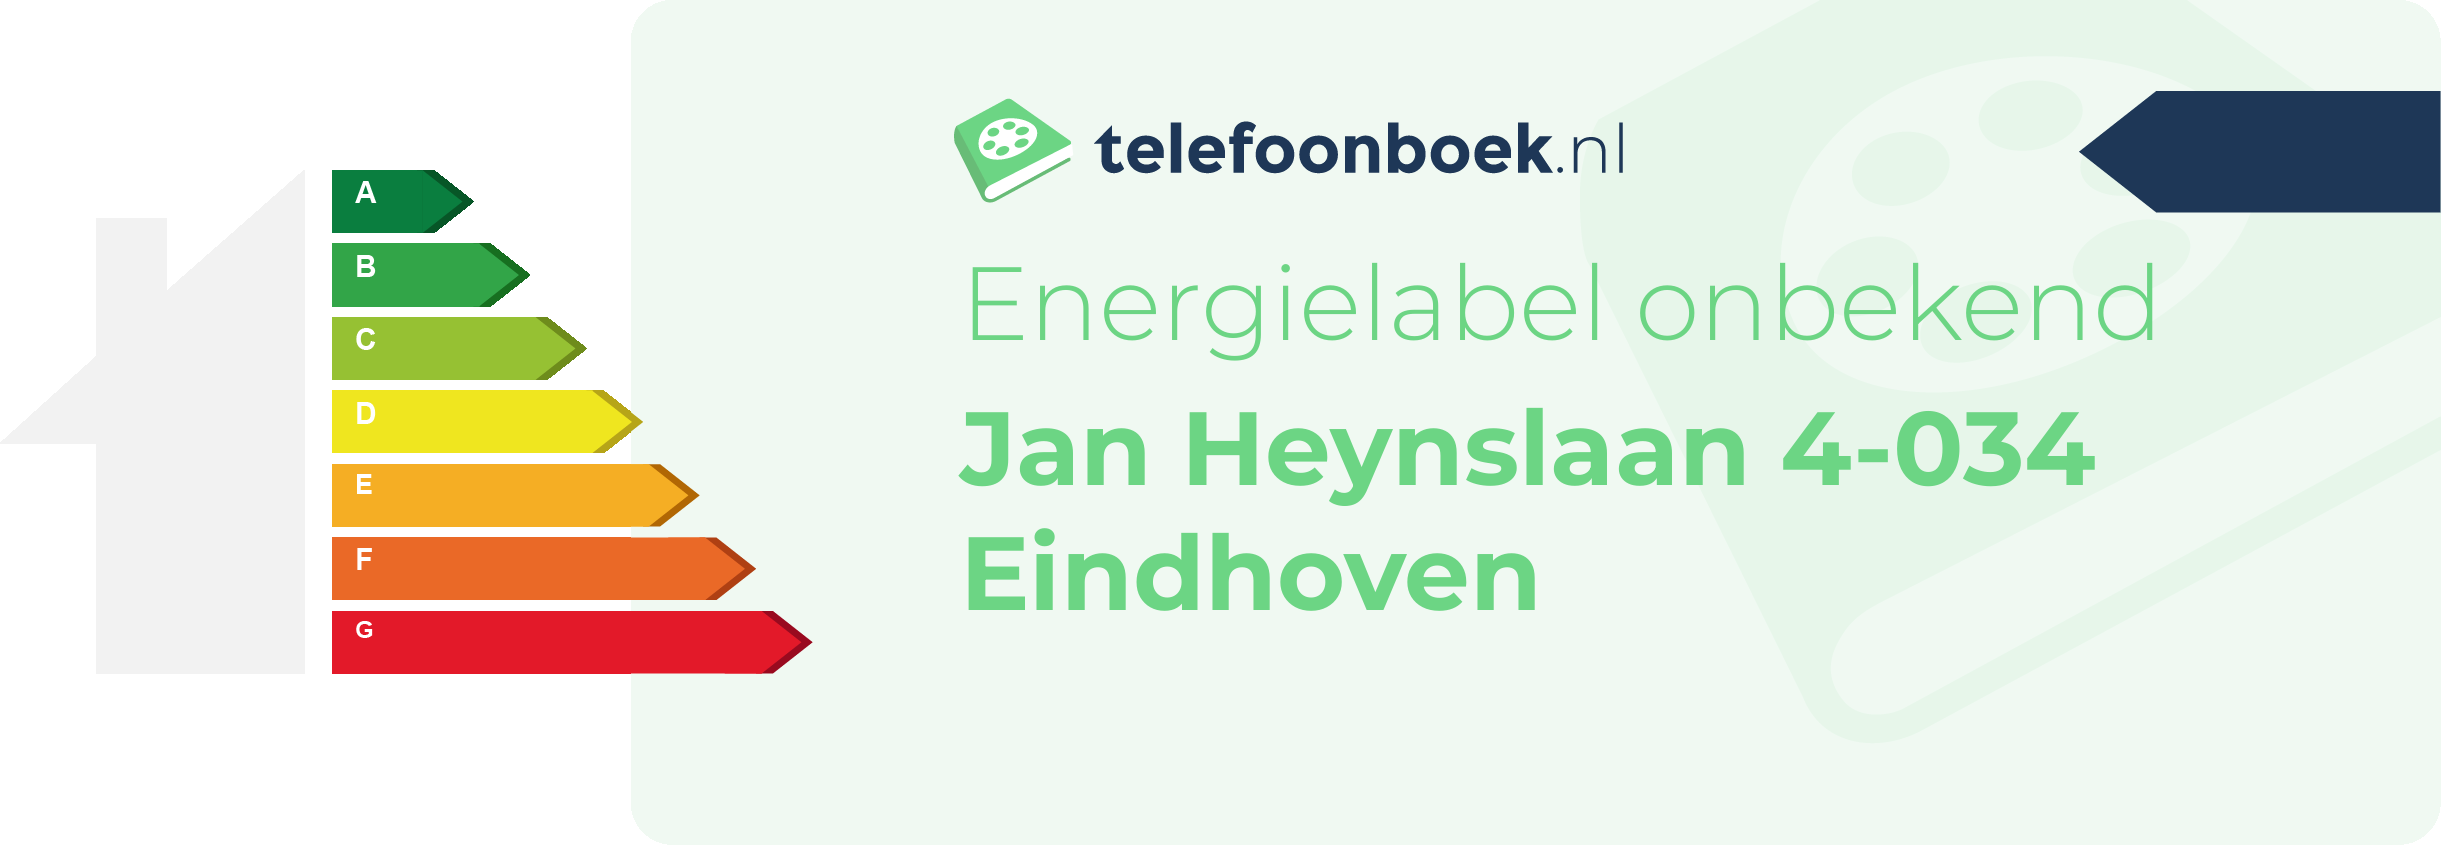 Energielabel Jan Heynslaan 4-034 Eindhoven